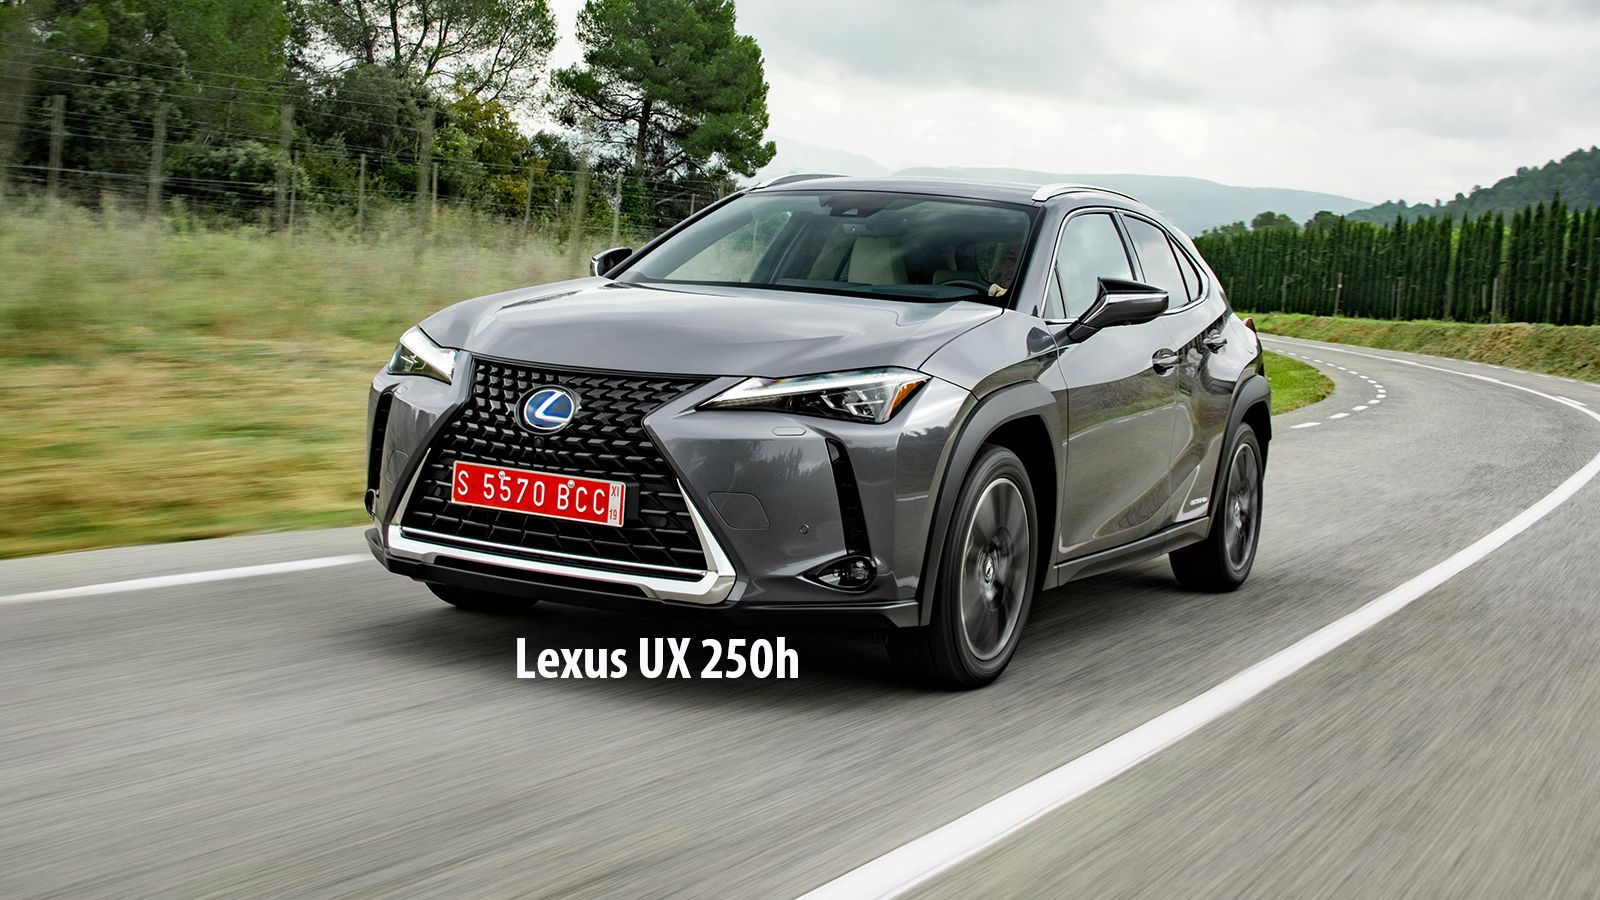 Με Leasing διάρκειας 48 μηνών μπορείτε να μισθώσετε το Lexus UX 250h, πληρώνοντας 299 ευρώ το μήνα.